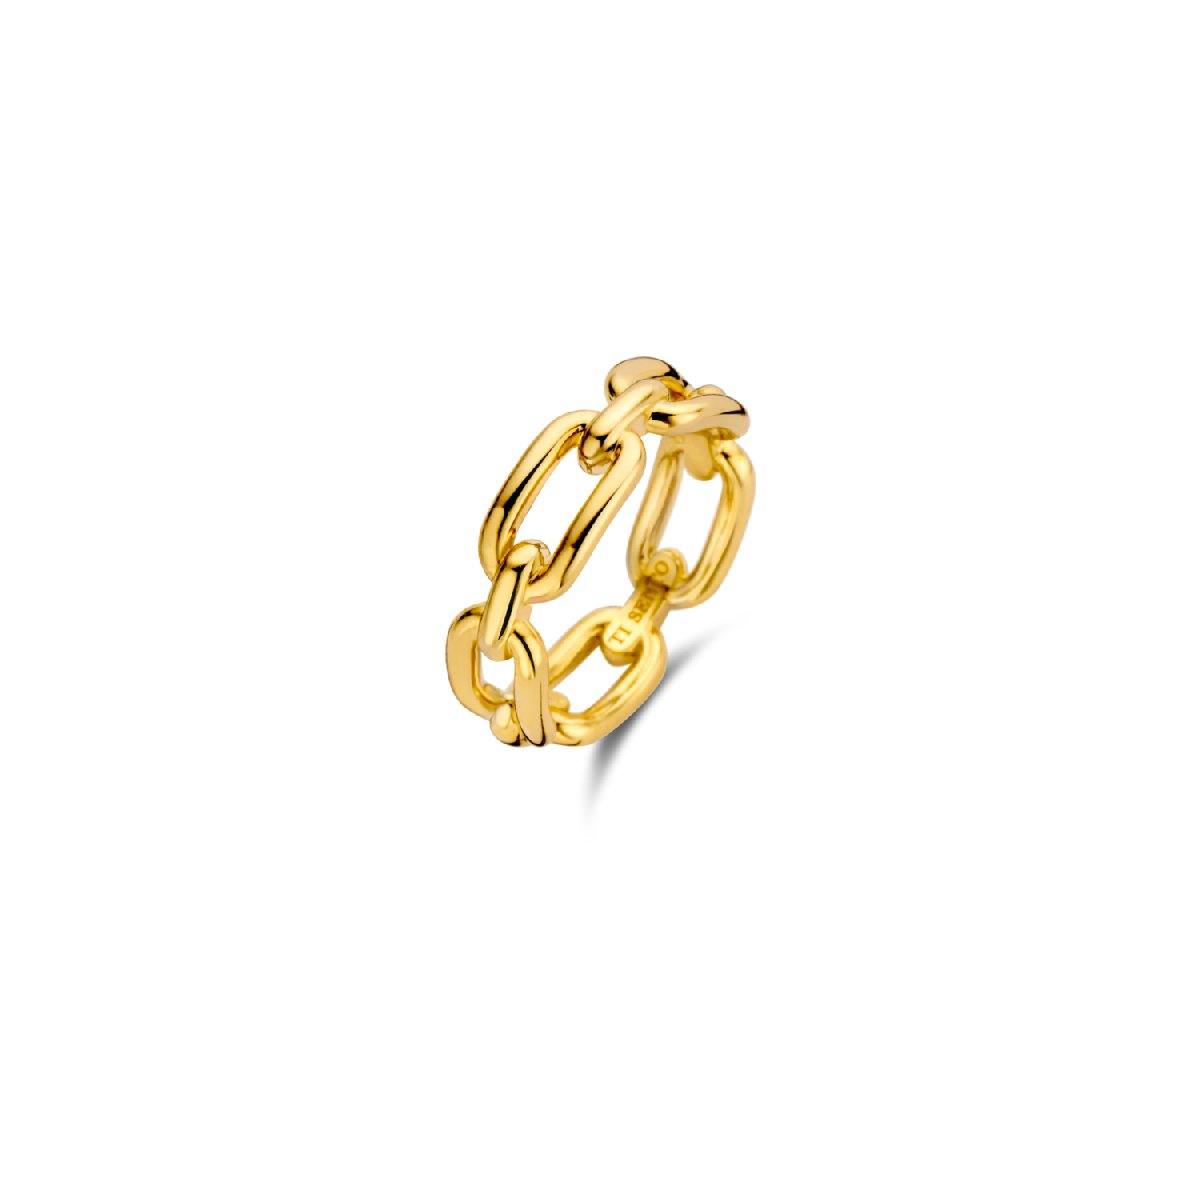 Questo anello d'argento a catena TI SENTO - Milano è composto da una serie di maglie placcate oro. Una geometria precisa, uno stile decisamente lussuoso. Un raffinato pezzo essenziale dal gusto vintage.